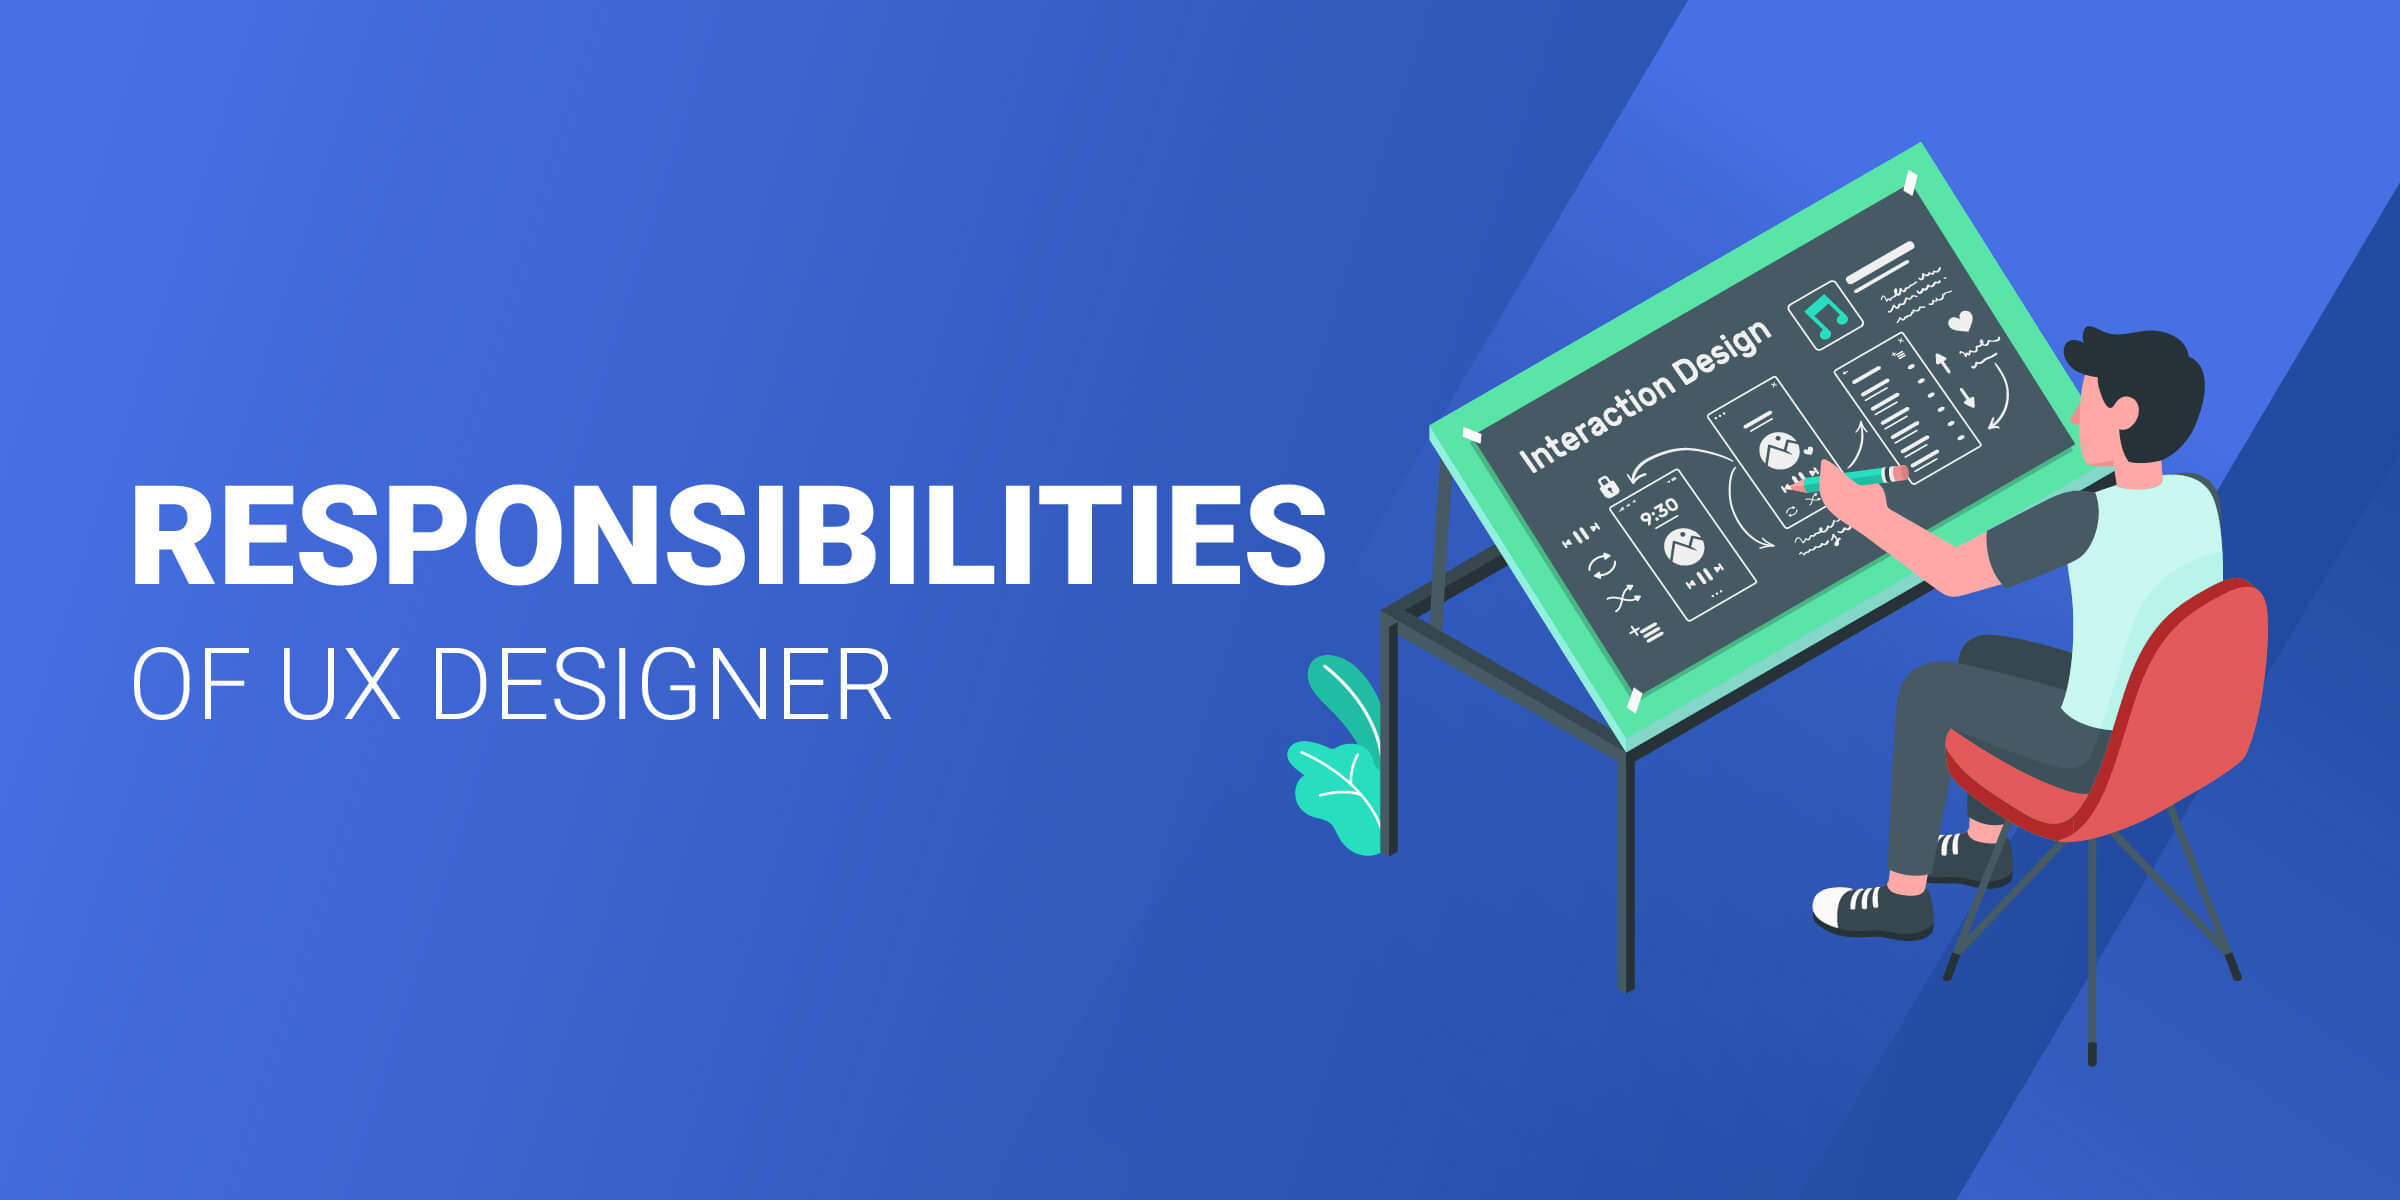 Responsibilites of UX Designer